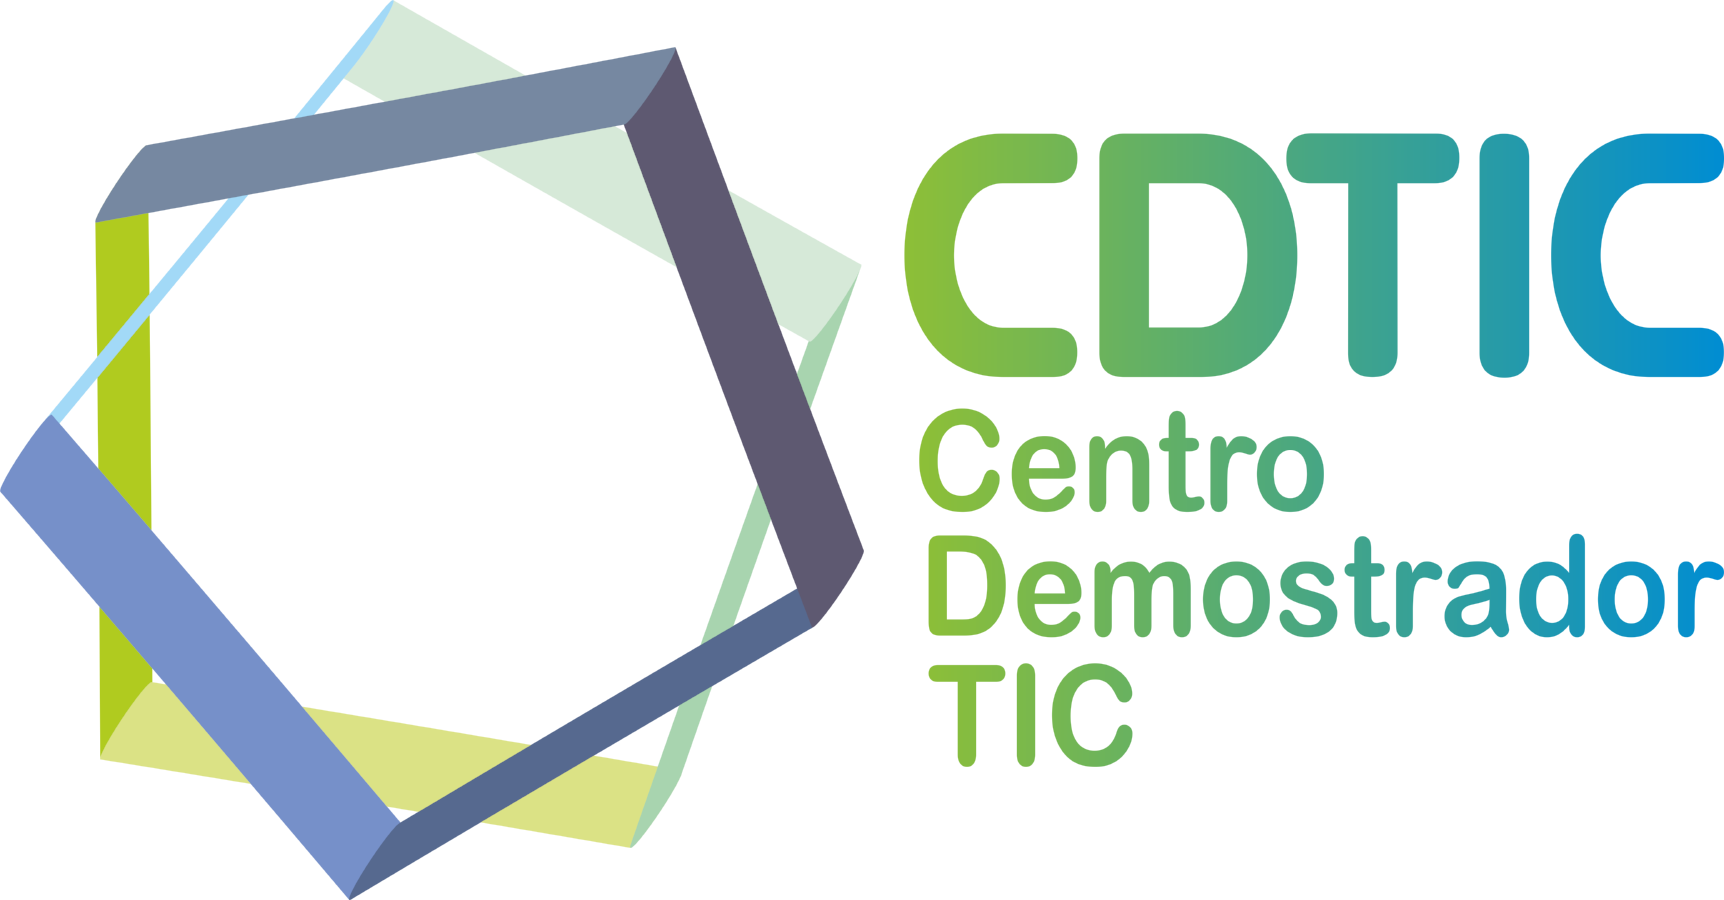 CDTIC. Centro Demostrador TIC  de Extremadura